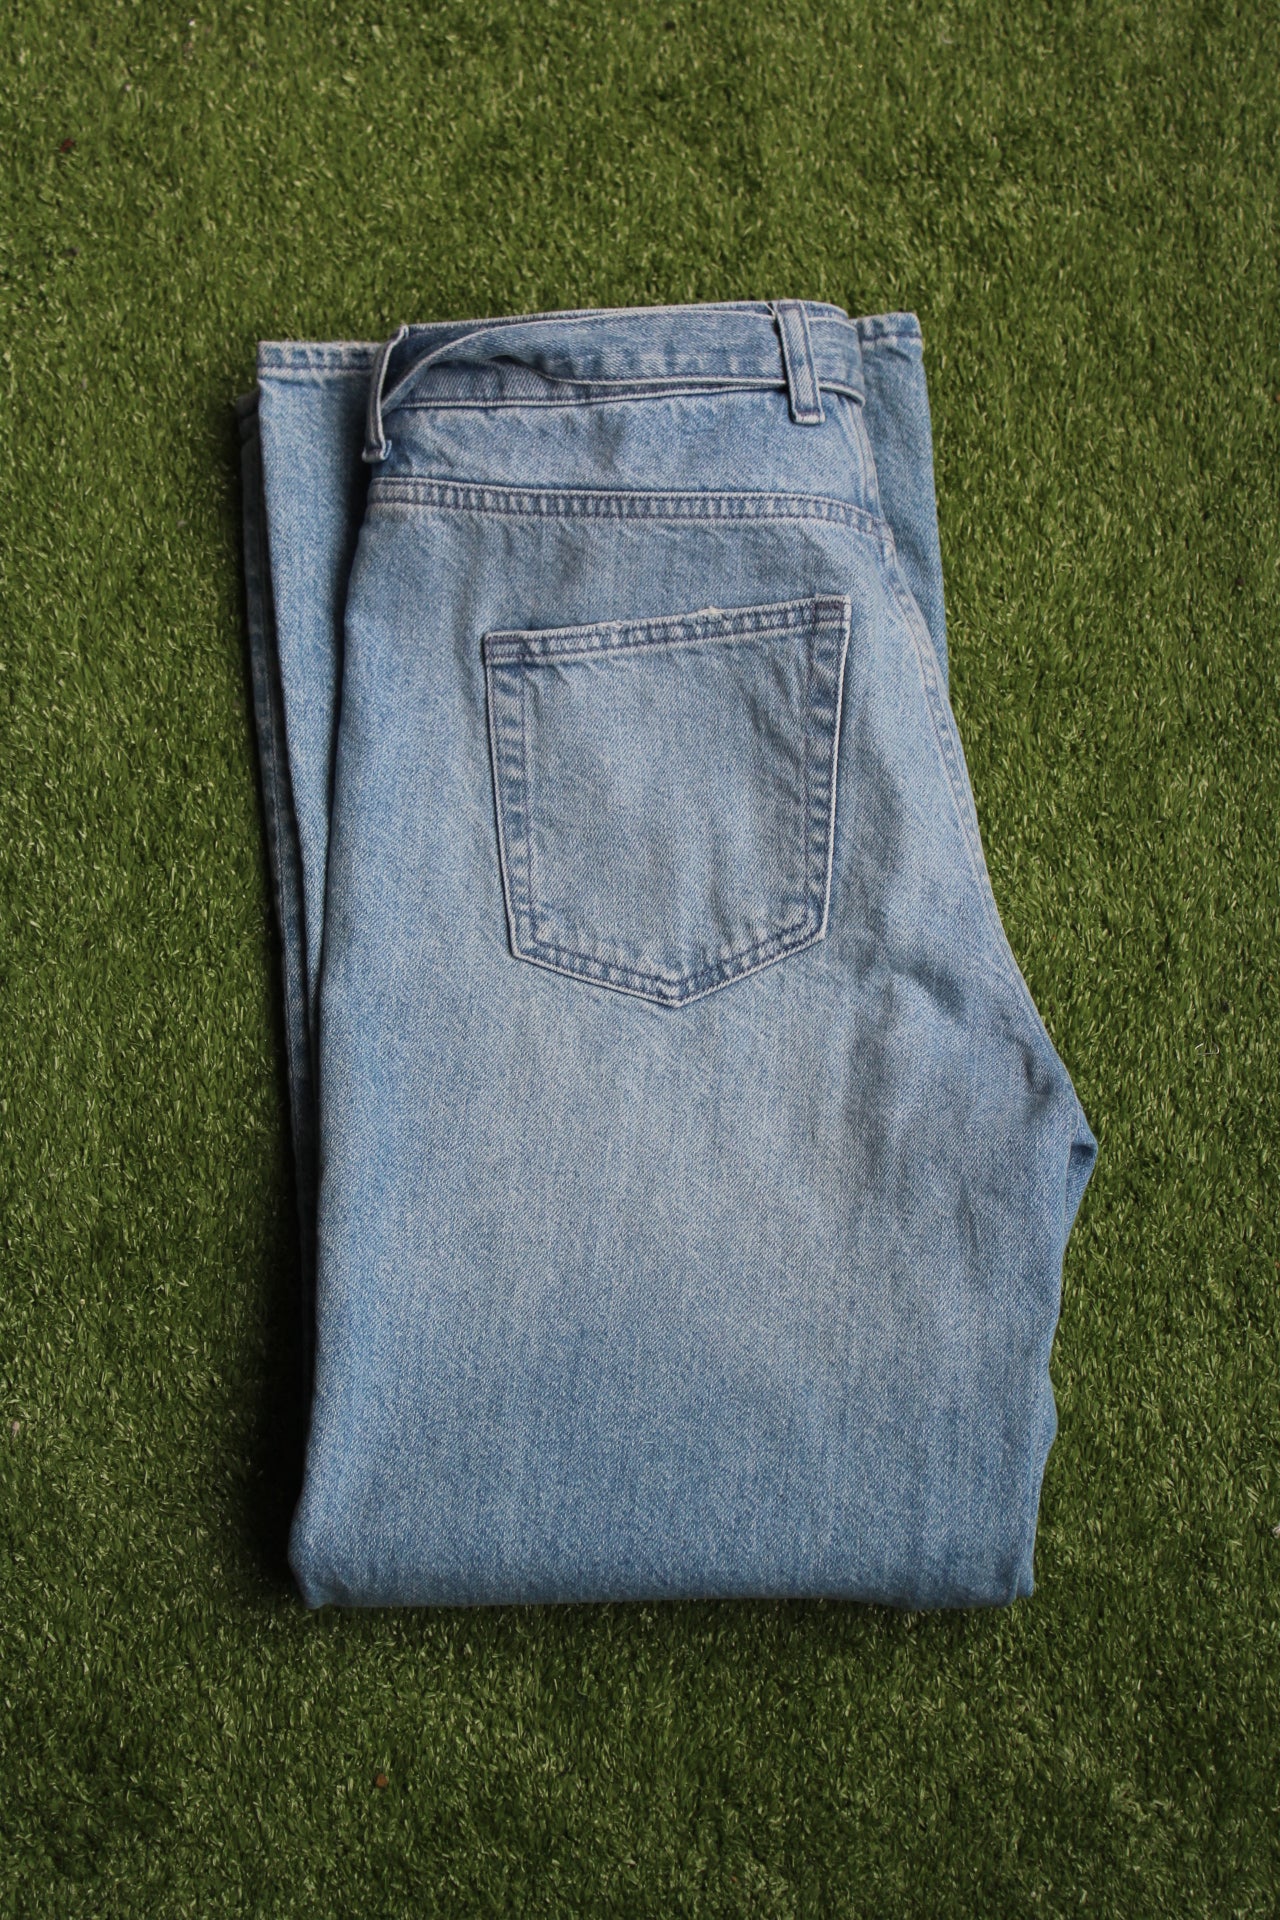 Bell bottom blue jeans (28)